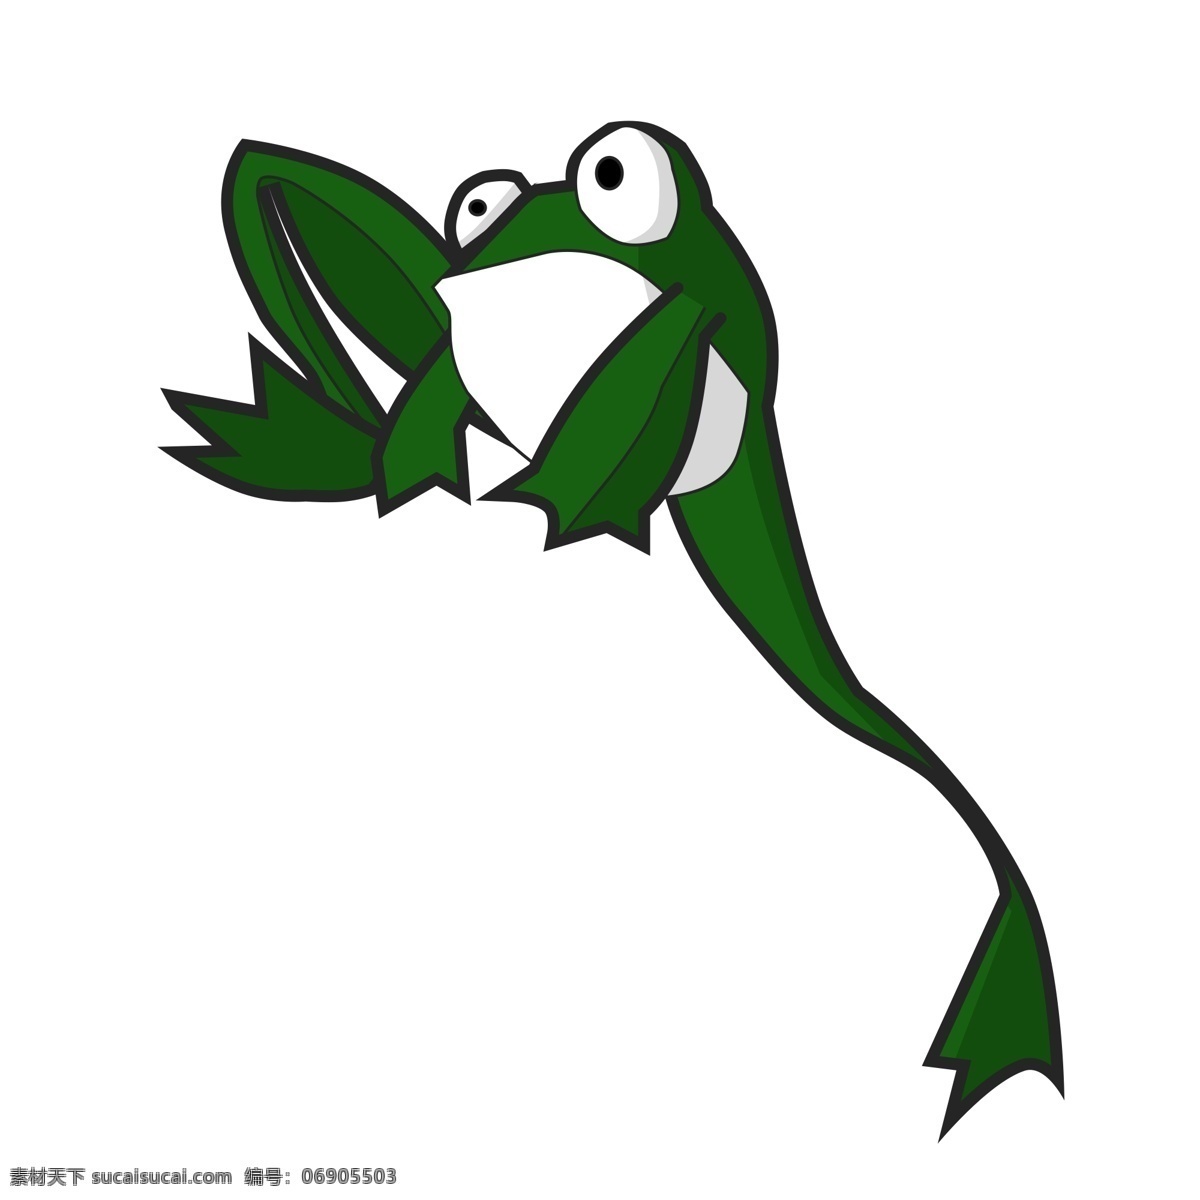 只 脚 跳 青蛙 商用 元素 绿色 动物 绘画 白肚皮 青蛙眼睛